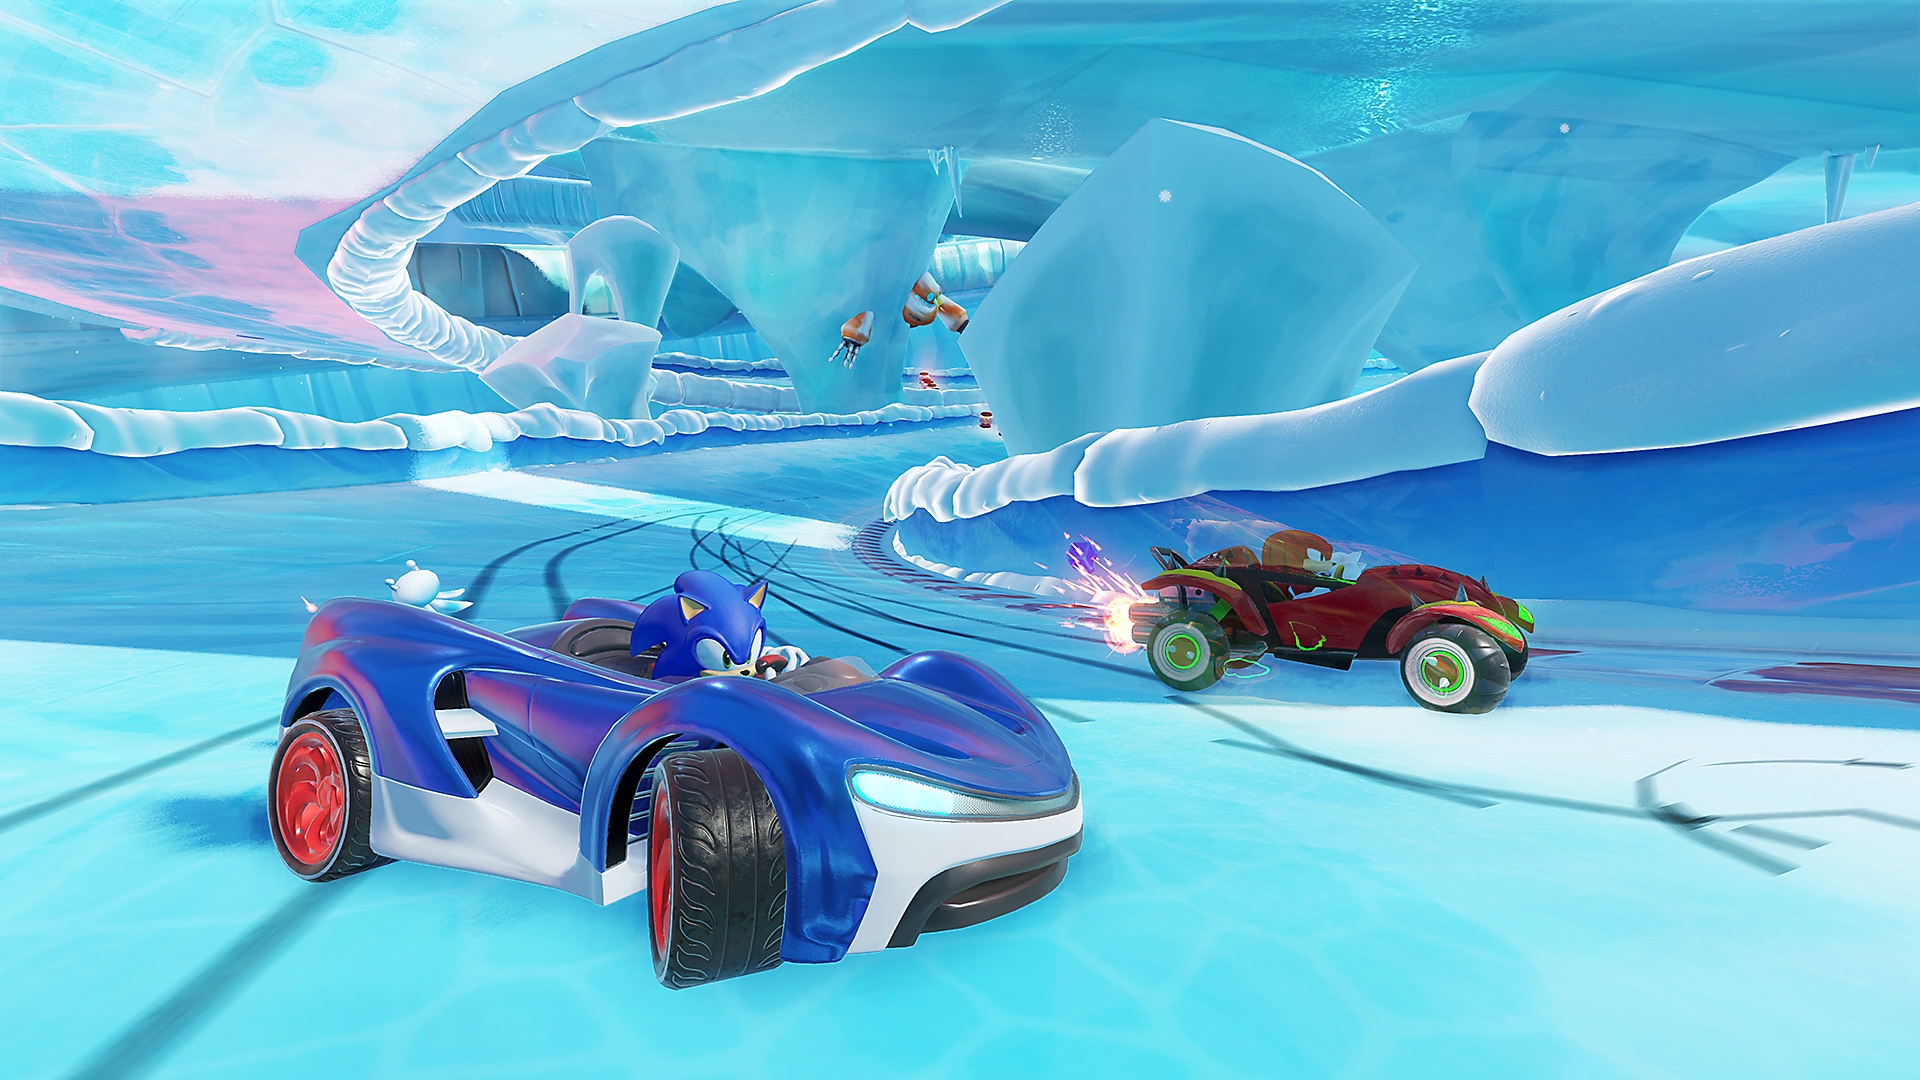 《索尼克团队赛车》截屏展示索尼克在冰面赛道上驾驶蓝色跑车